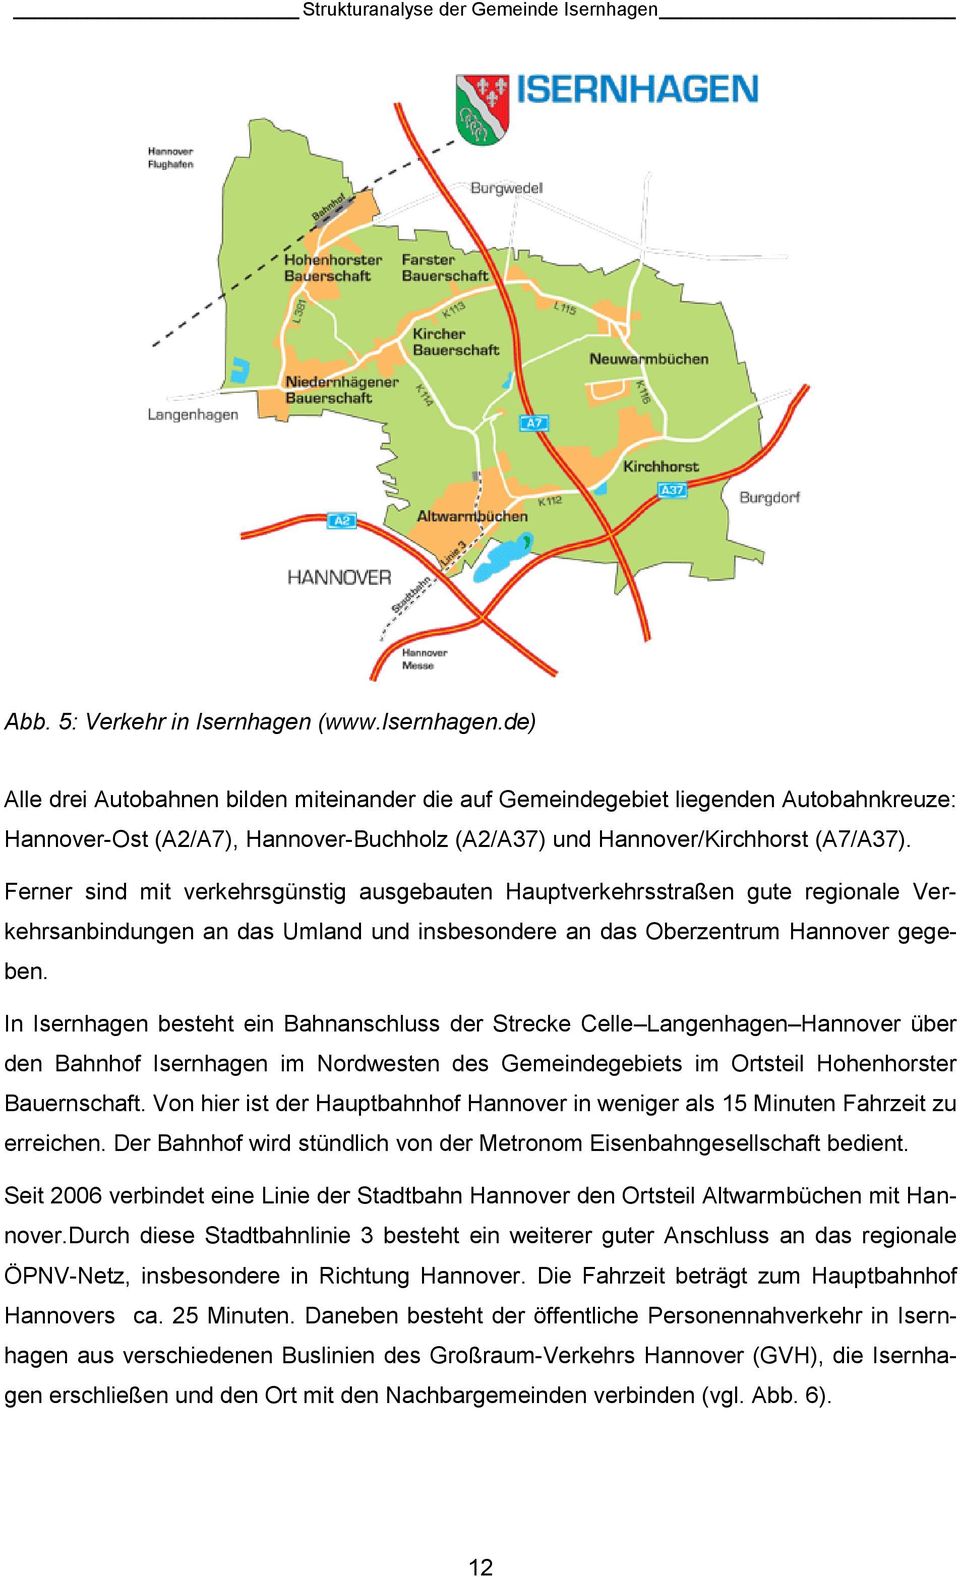 Ferner sind mit verkehrsgünstig ausgebauten Hauptverkehrsstraßen gute regionale Verkehrsanbindungen an das Umland und insbesondere an das Oberzentrum Hannover gegeben.